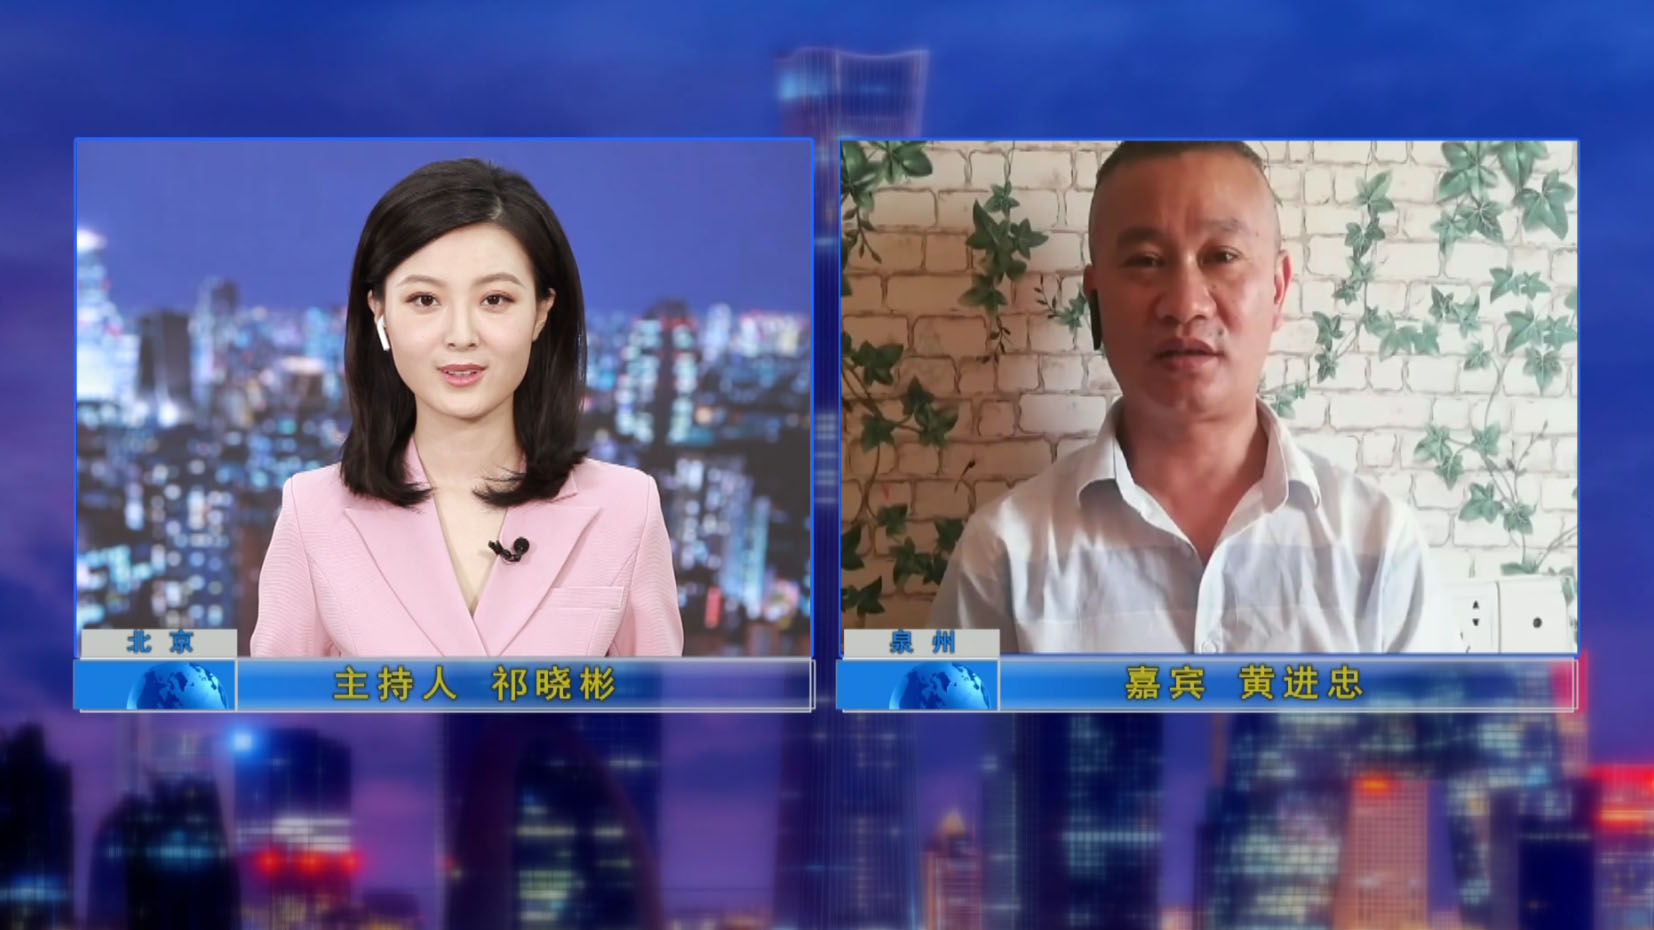 أجرى البرنامج التليفزيوني "Credit China" مقابلة مع المدير العام.